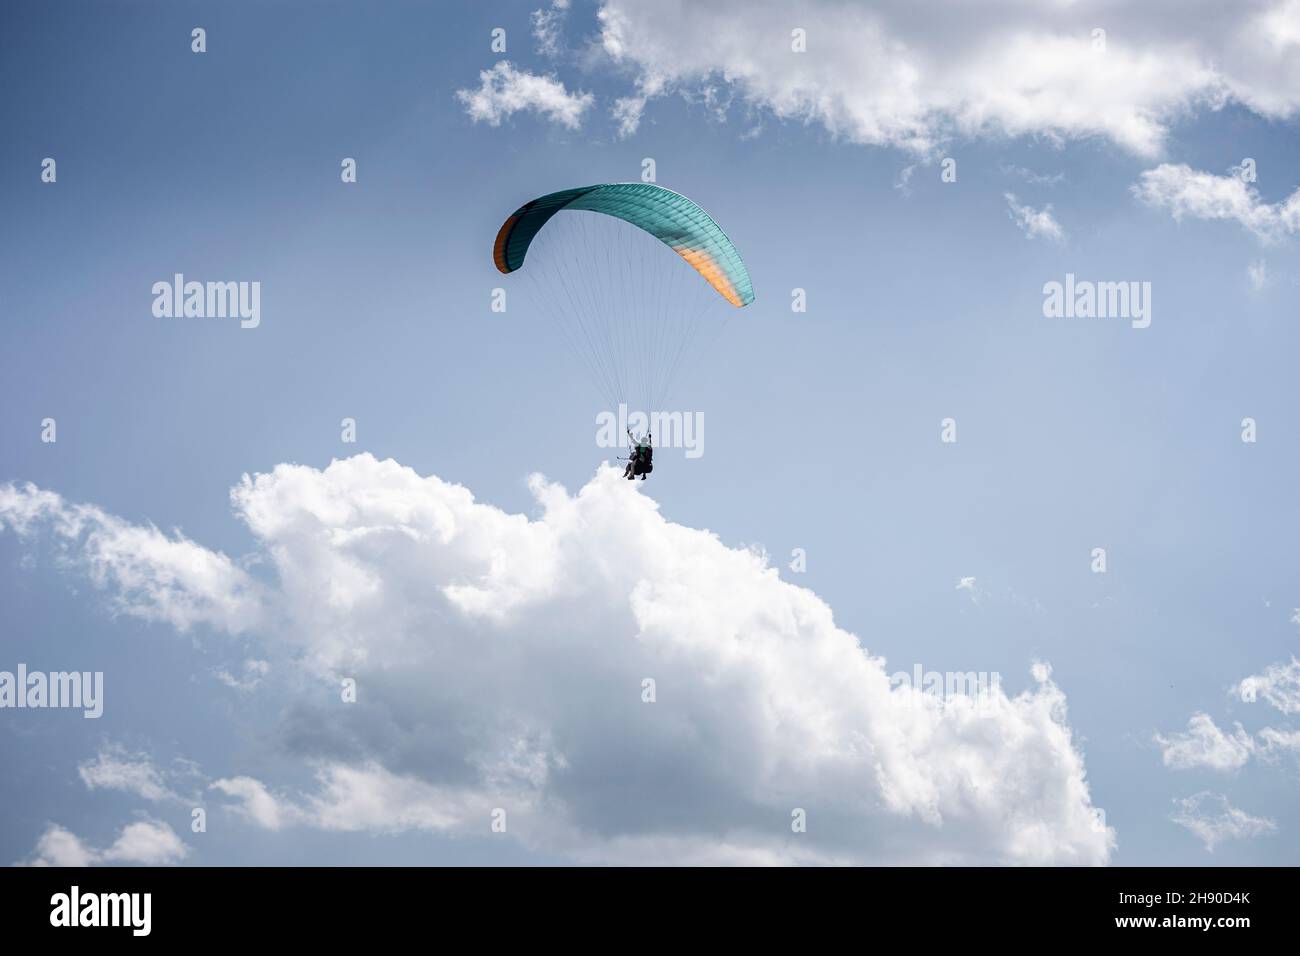 Gleitschirmfliegen mit einem Paar Instruktoren. Strahlend blauer Himmel mit schönen weißen, flauschigen Wolken. Freizeit mit aktiven Abenteuern. Tourismus in Georgien Stockfoto